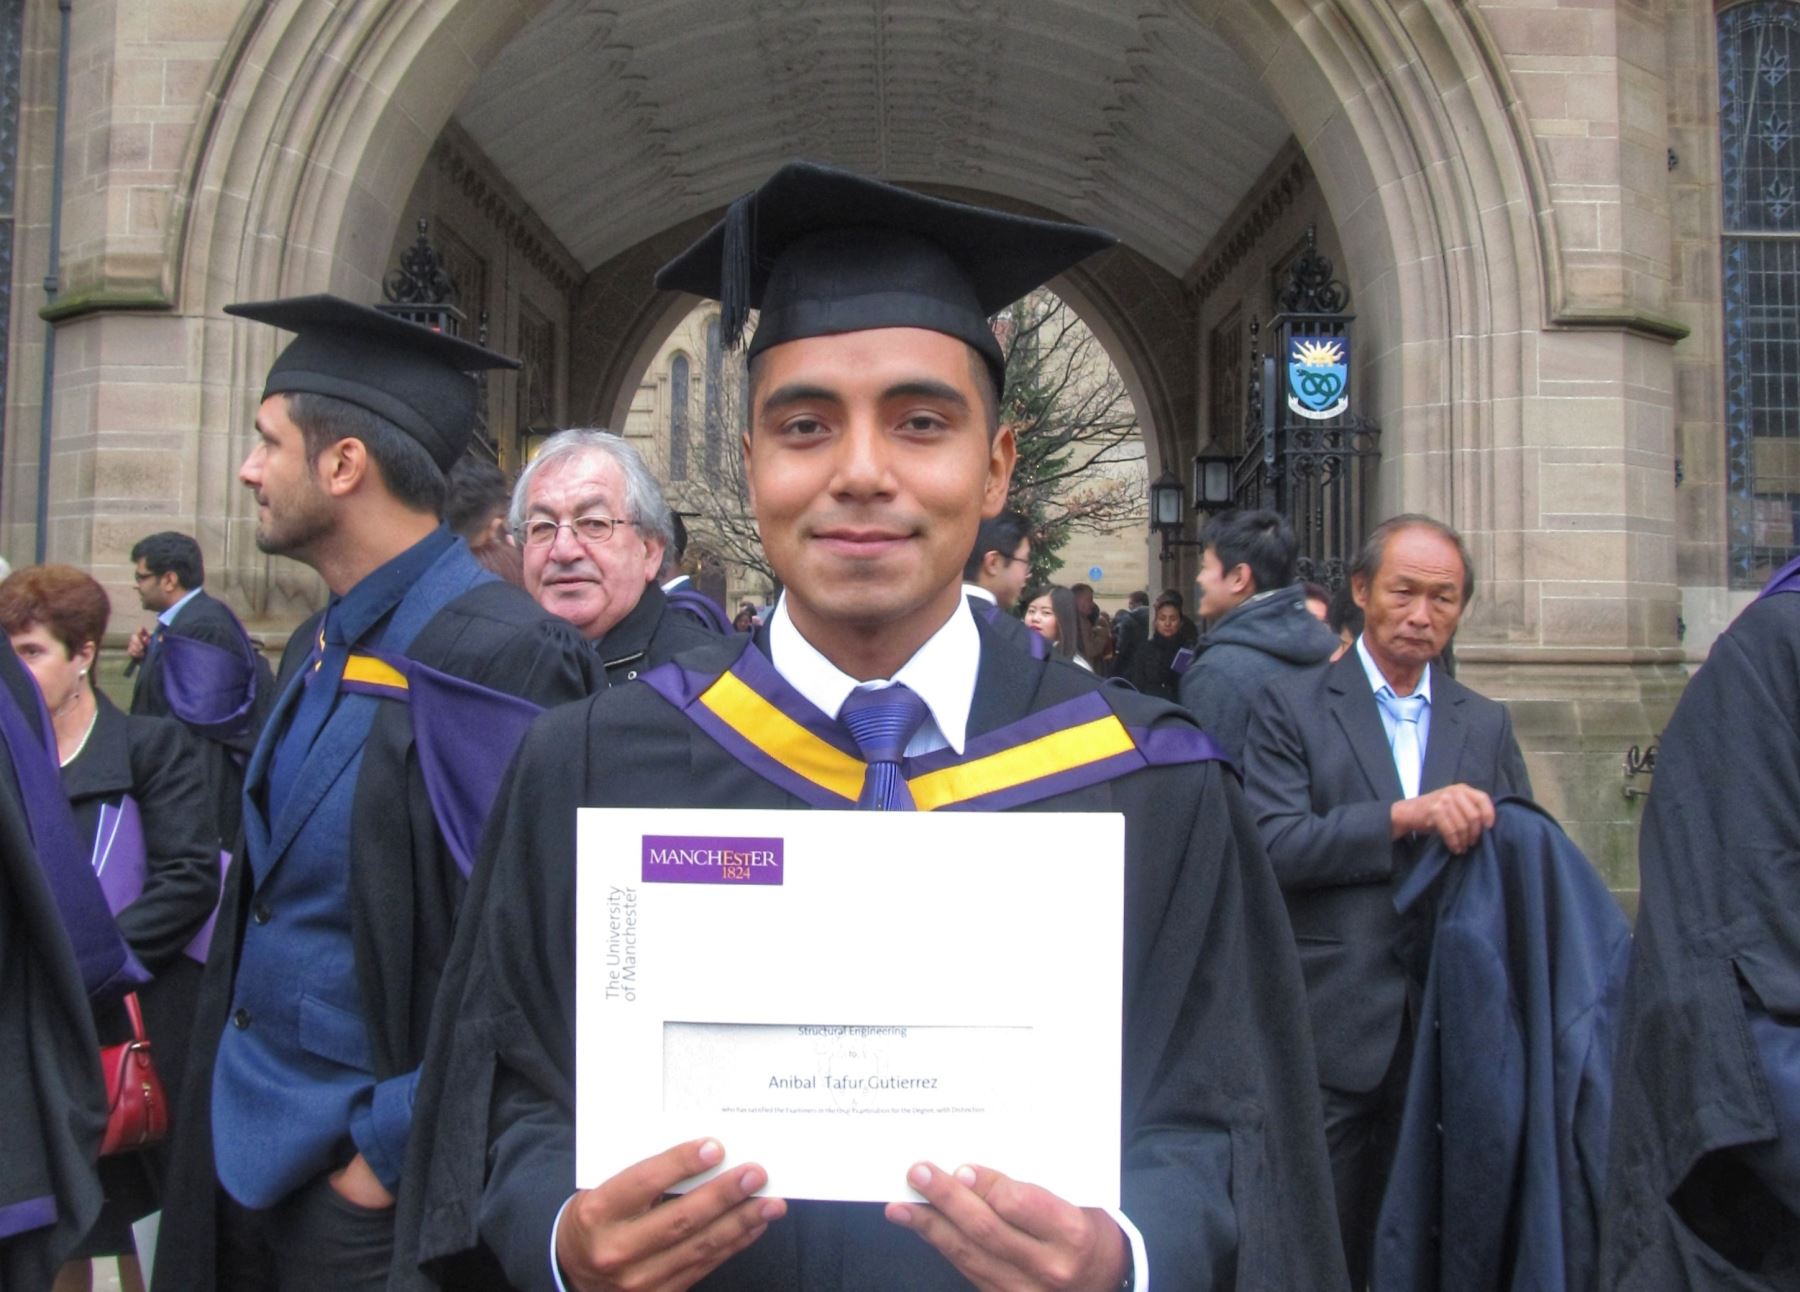 El joven peruano Aníbal Tafur Gutiérrez ocupó el primer puesto en la Maestría en Ingeniería Estructural en la Universidad de Manchester.